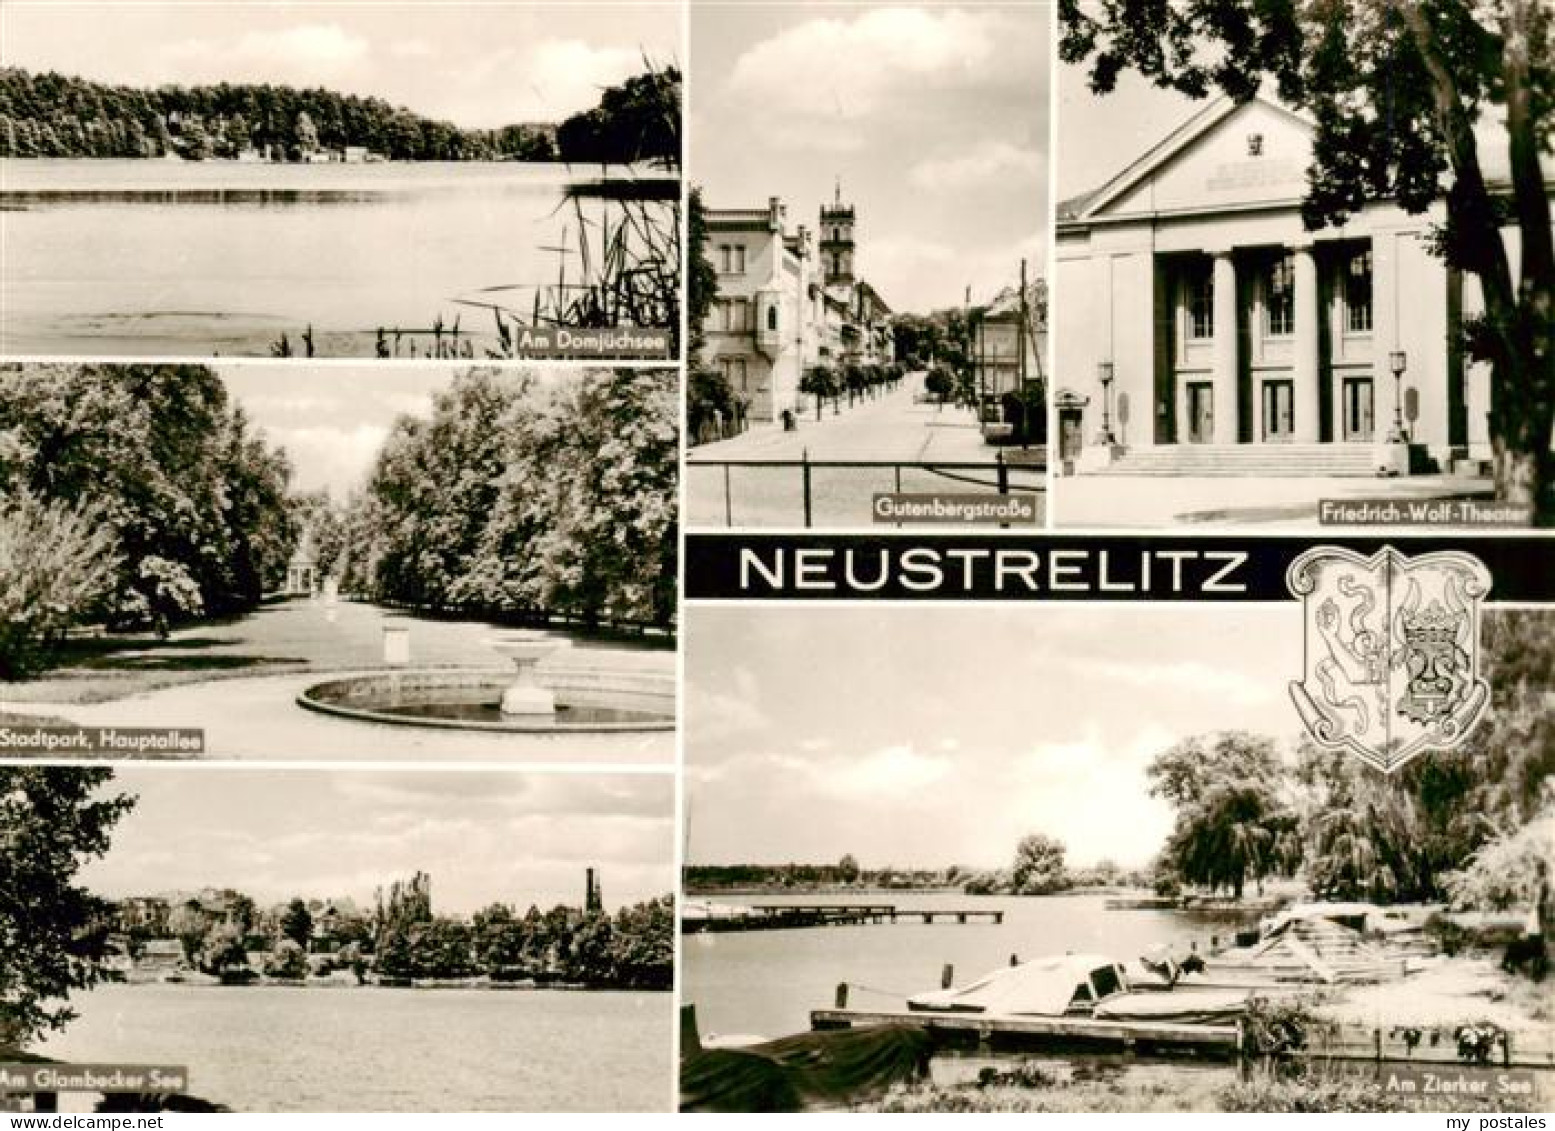 73961789 Neustrelitz Am Domjuechsee Gutenbergstr Friedr Wolf Theater Stadtpark G - Neustrelitz